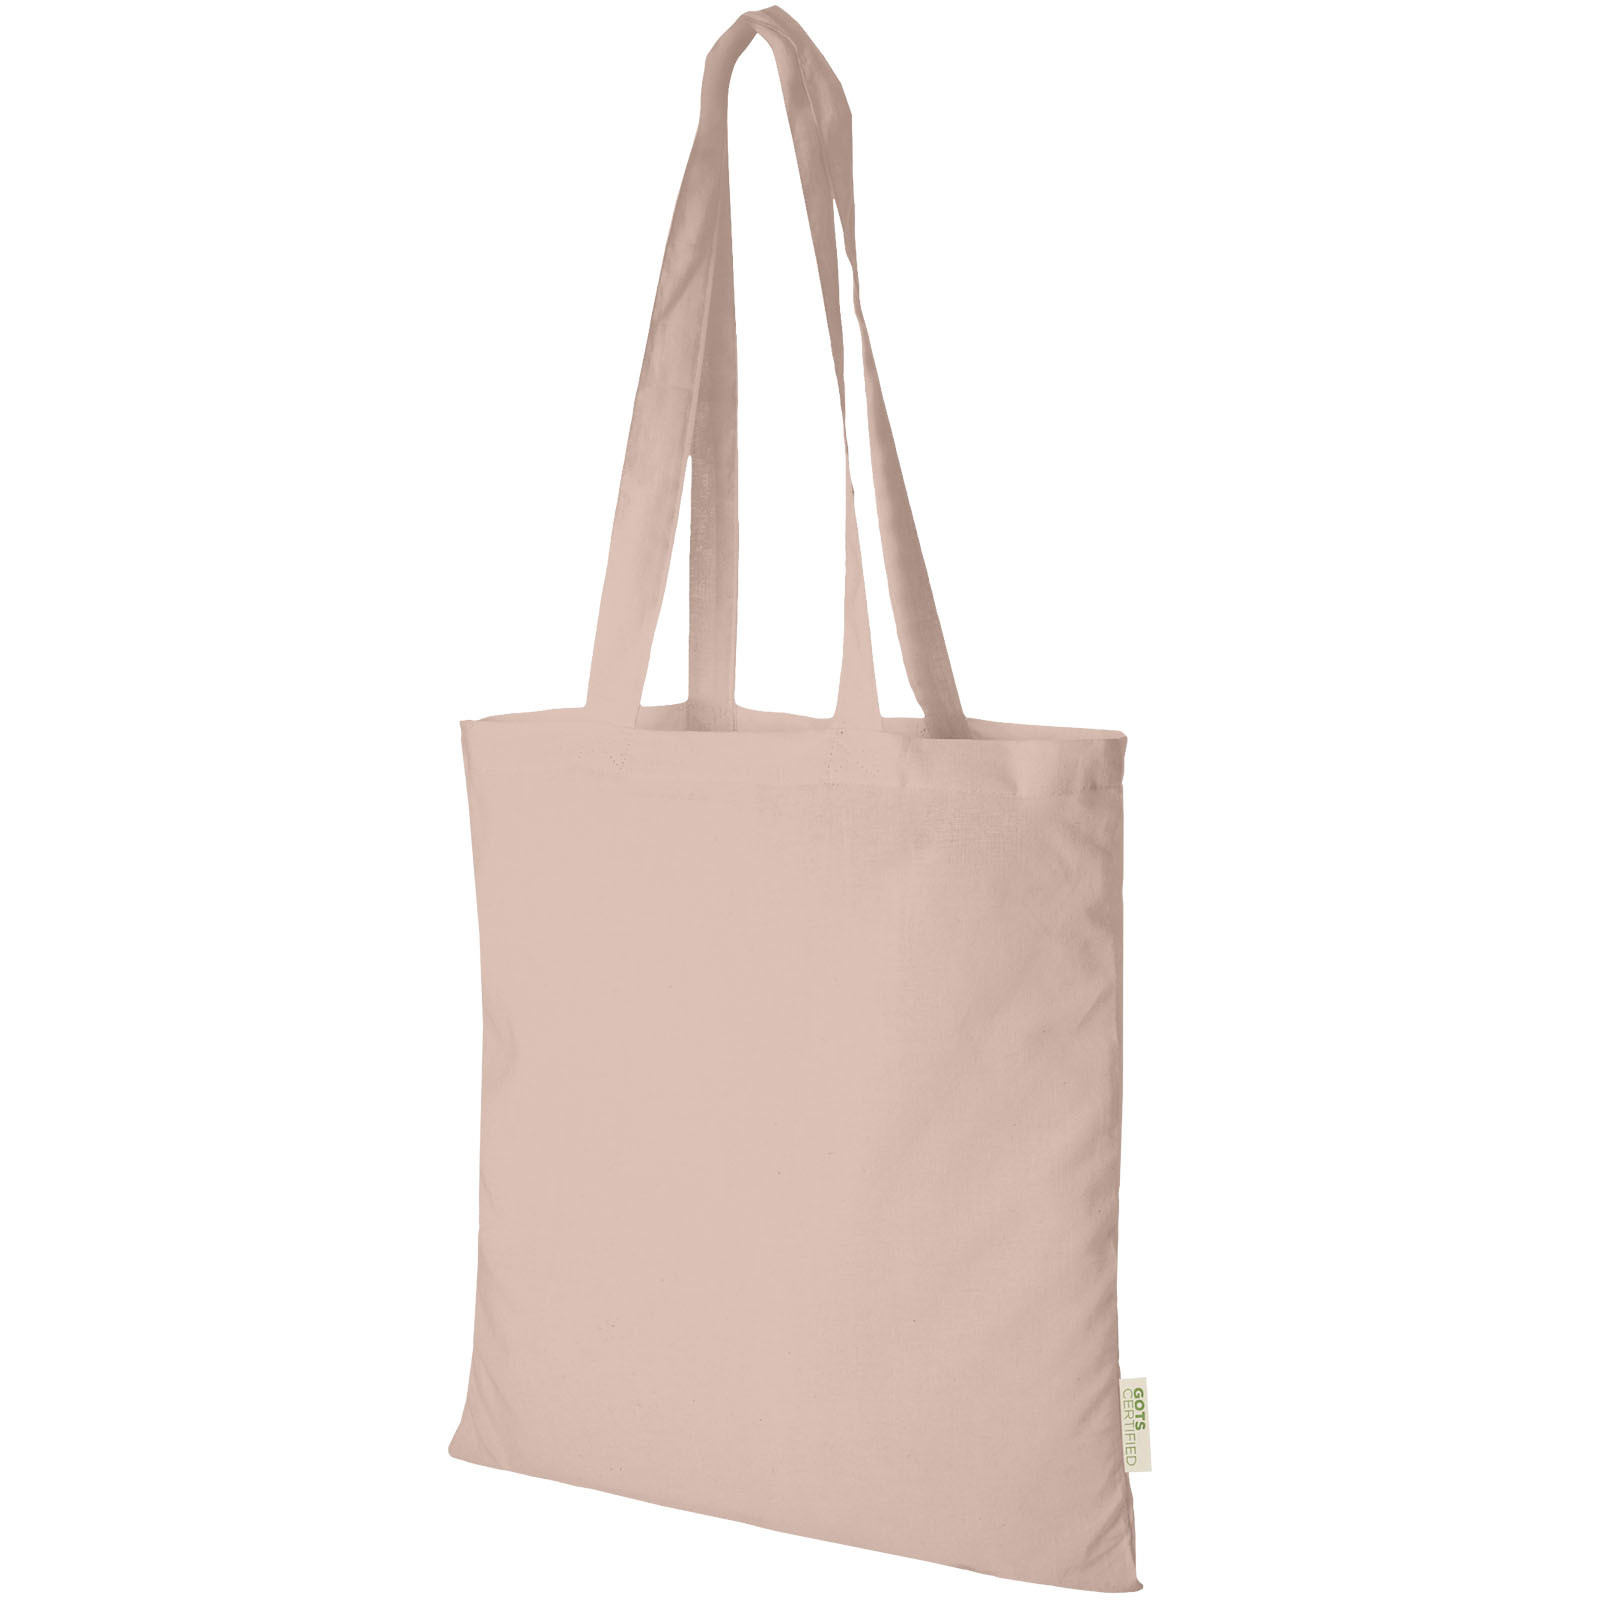 Tote bag in cotone biologico GOTS 100 g / m² Orissa